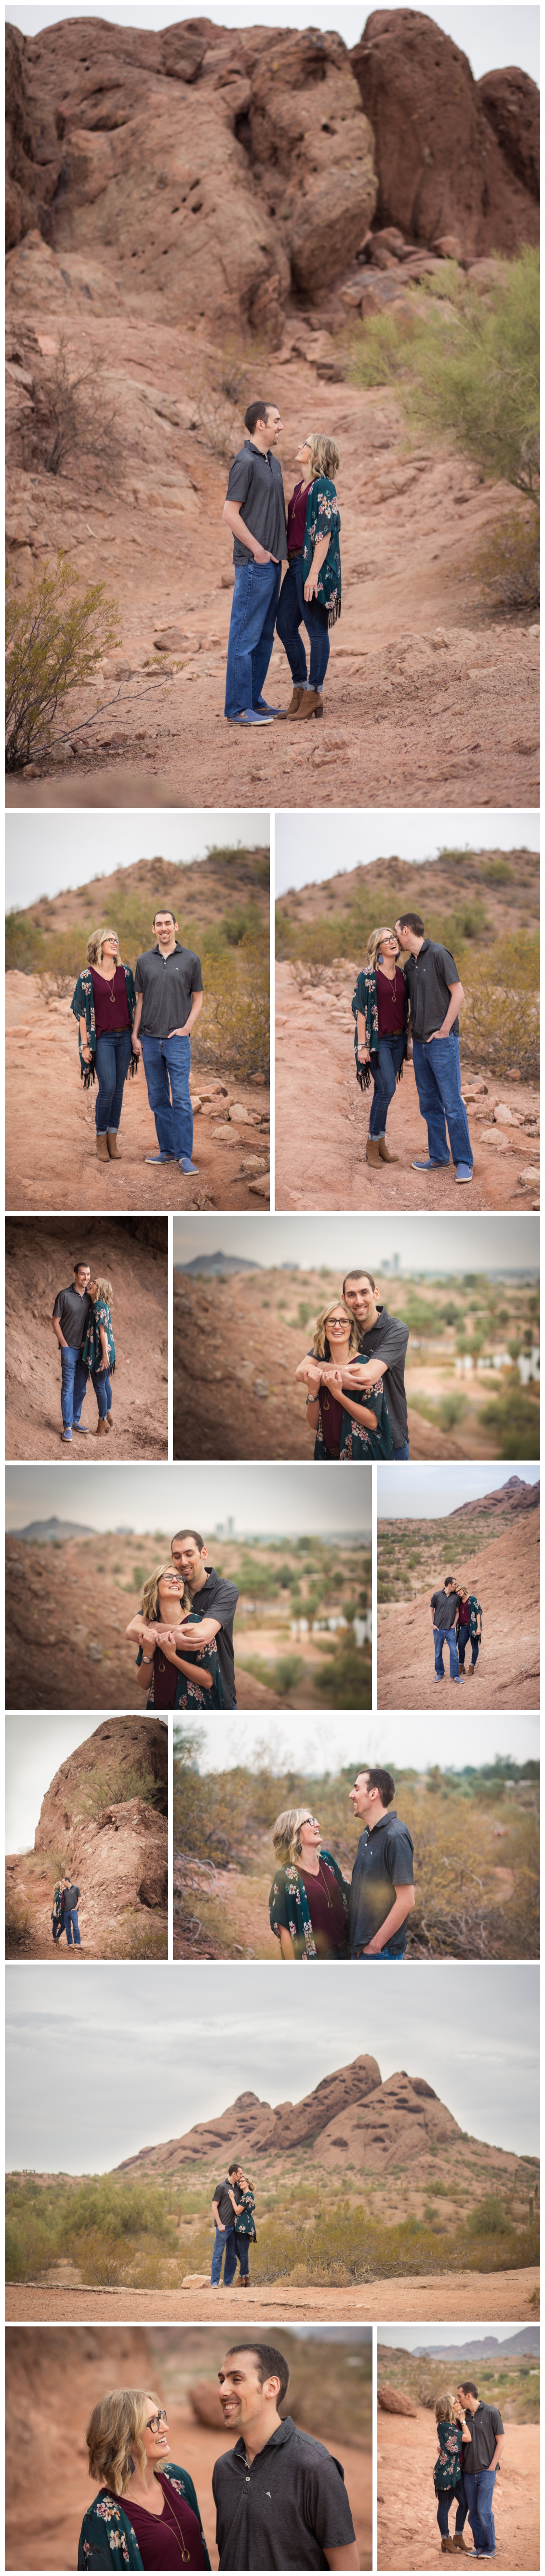 Arizona Couples Engagement Photography